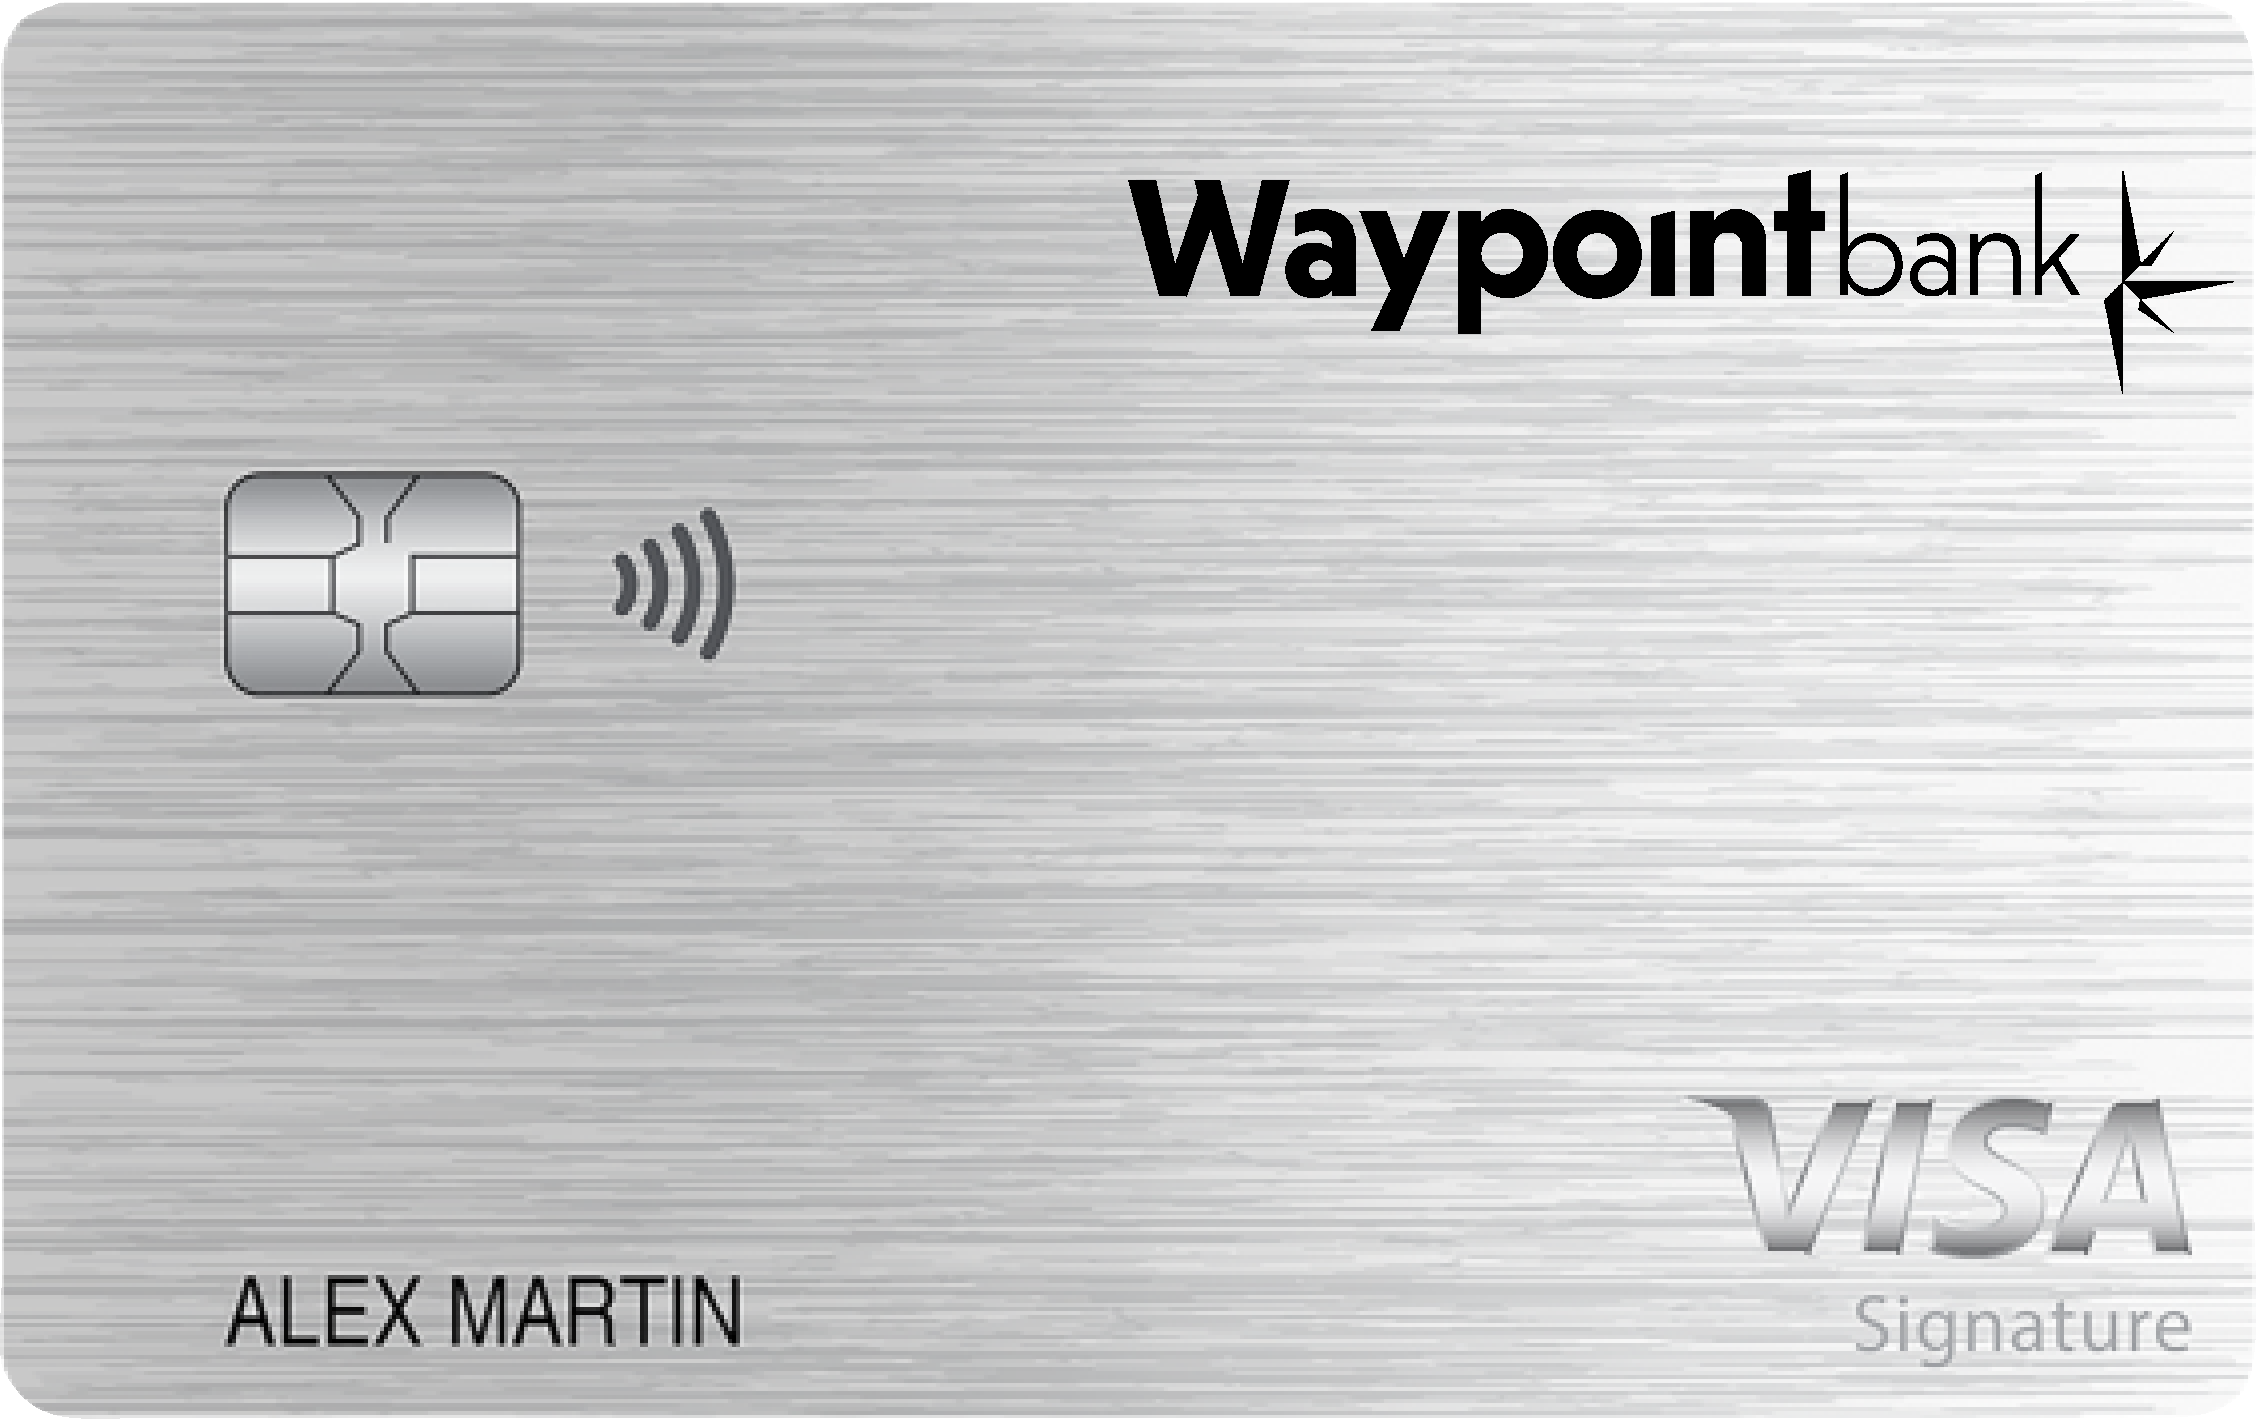 Waypoint Bank Travel Rewards+ Card